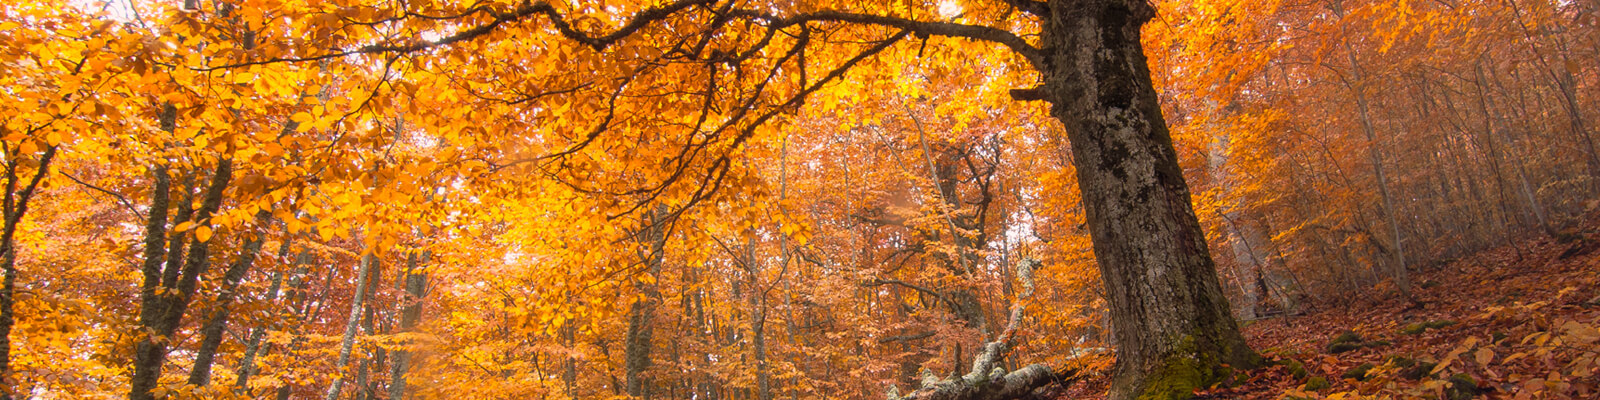 autumn-trees